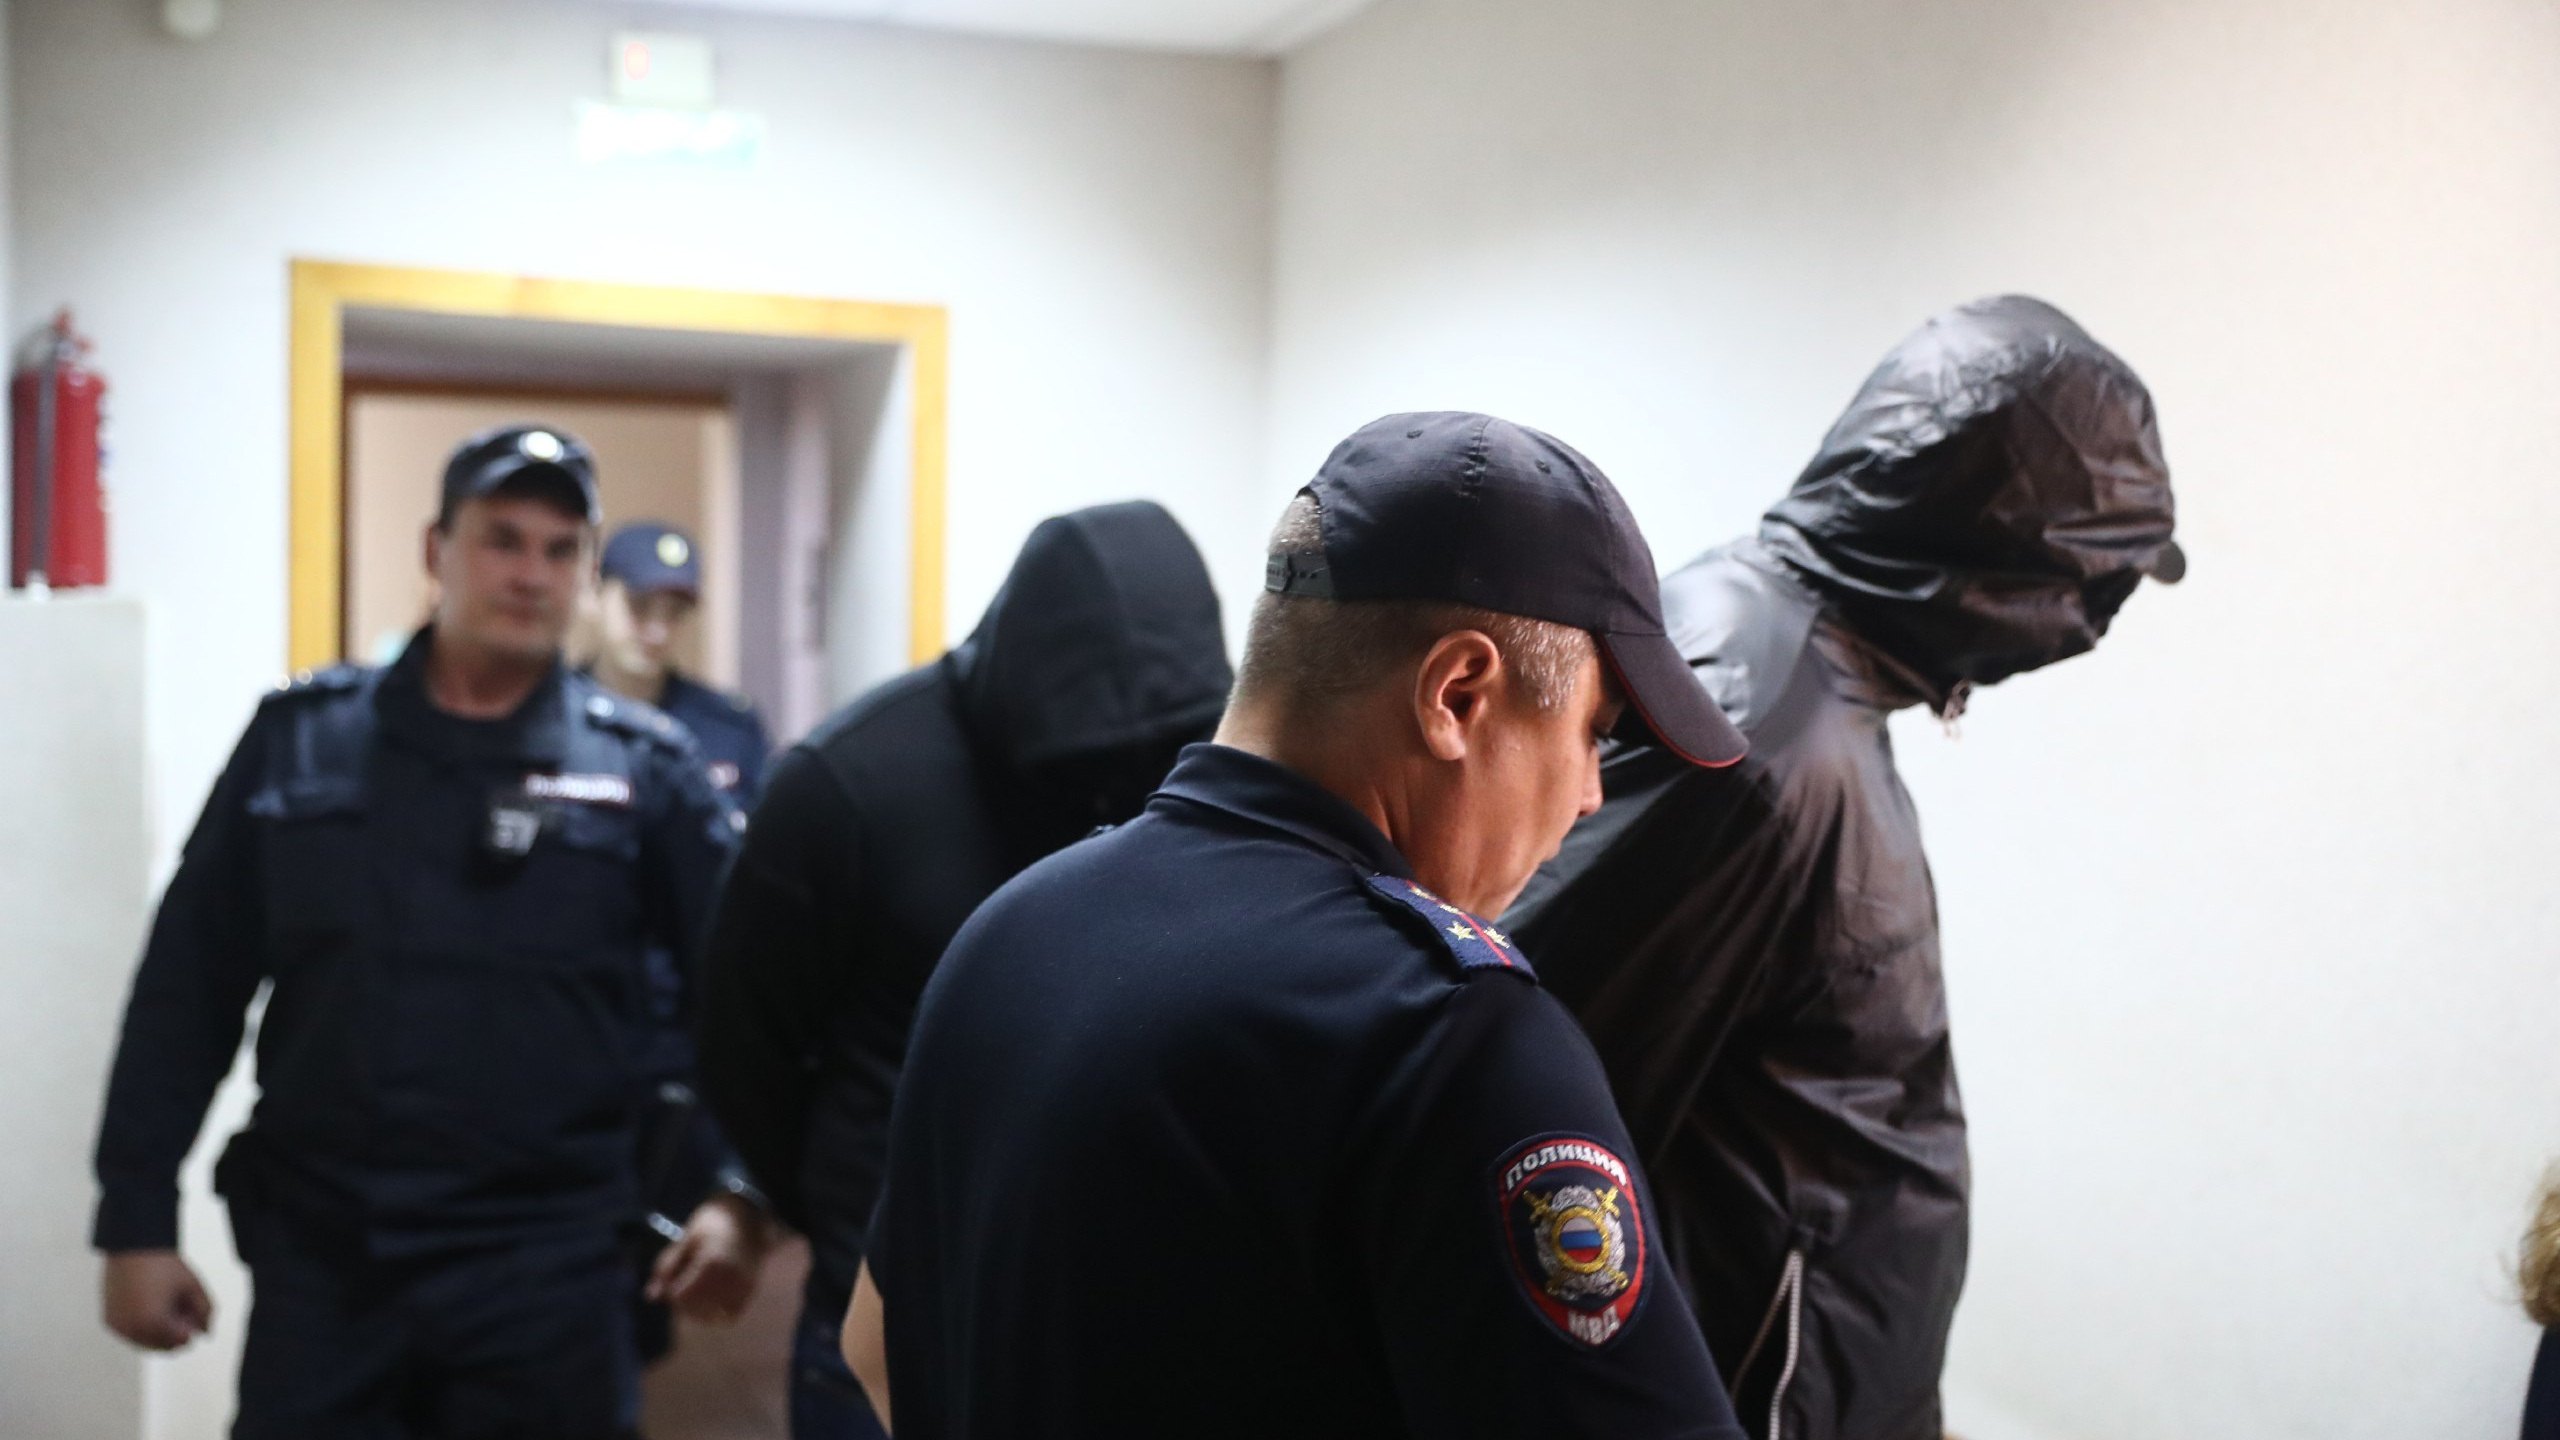 Подсудимые не возражали: обвиняемых в расстреле бизнесмена на Ипподромской отправили в СИЗО до декабря